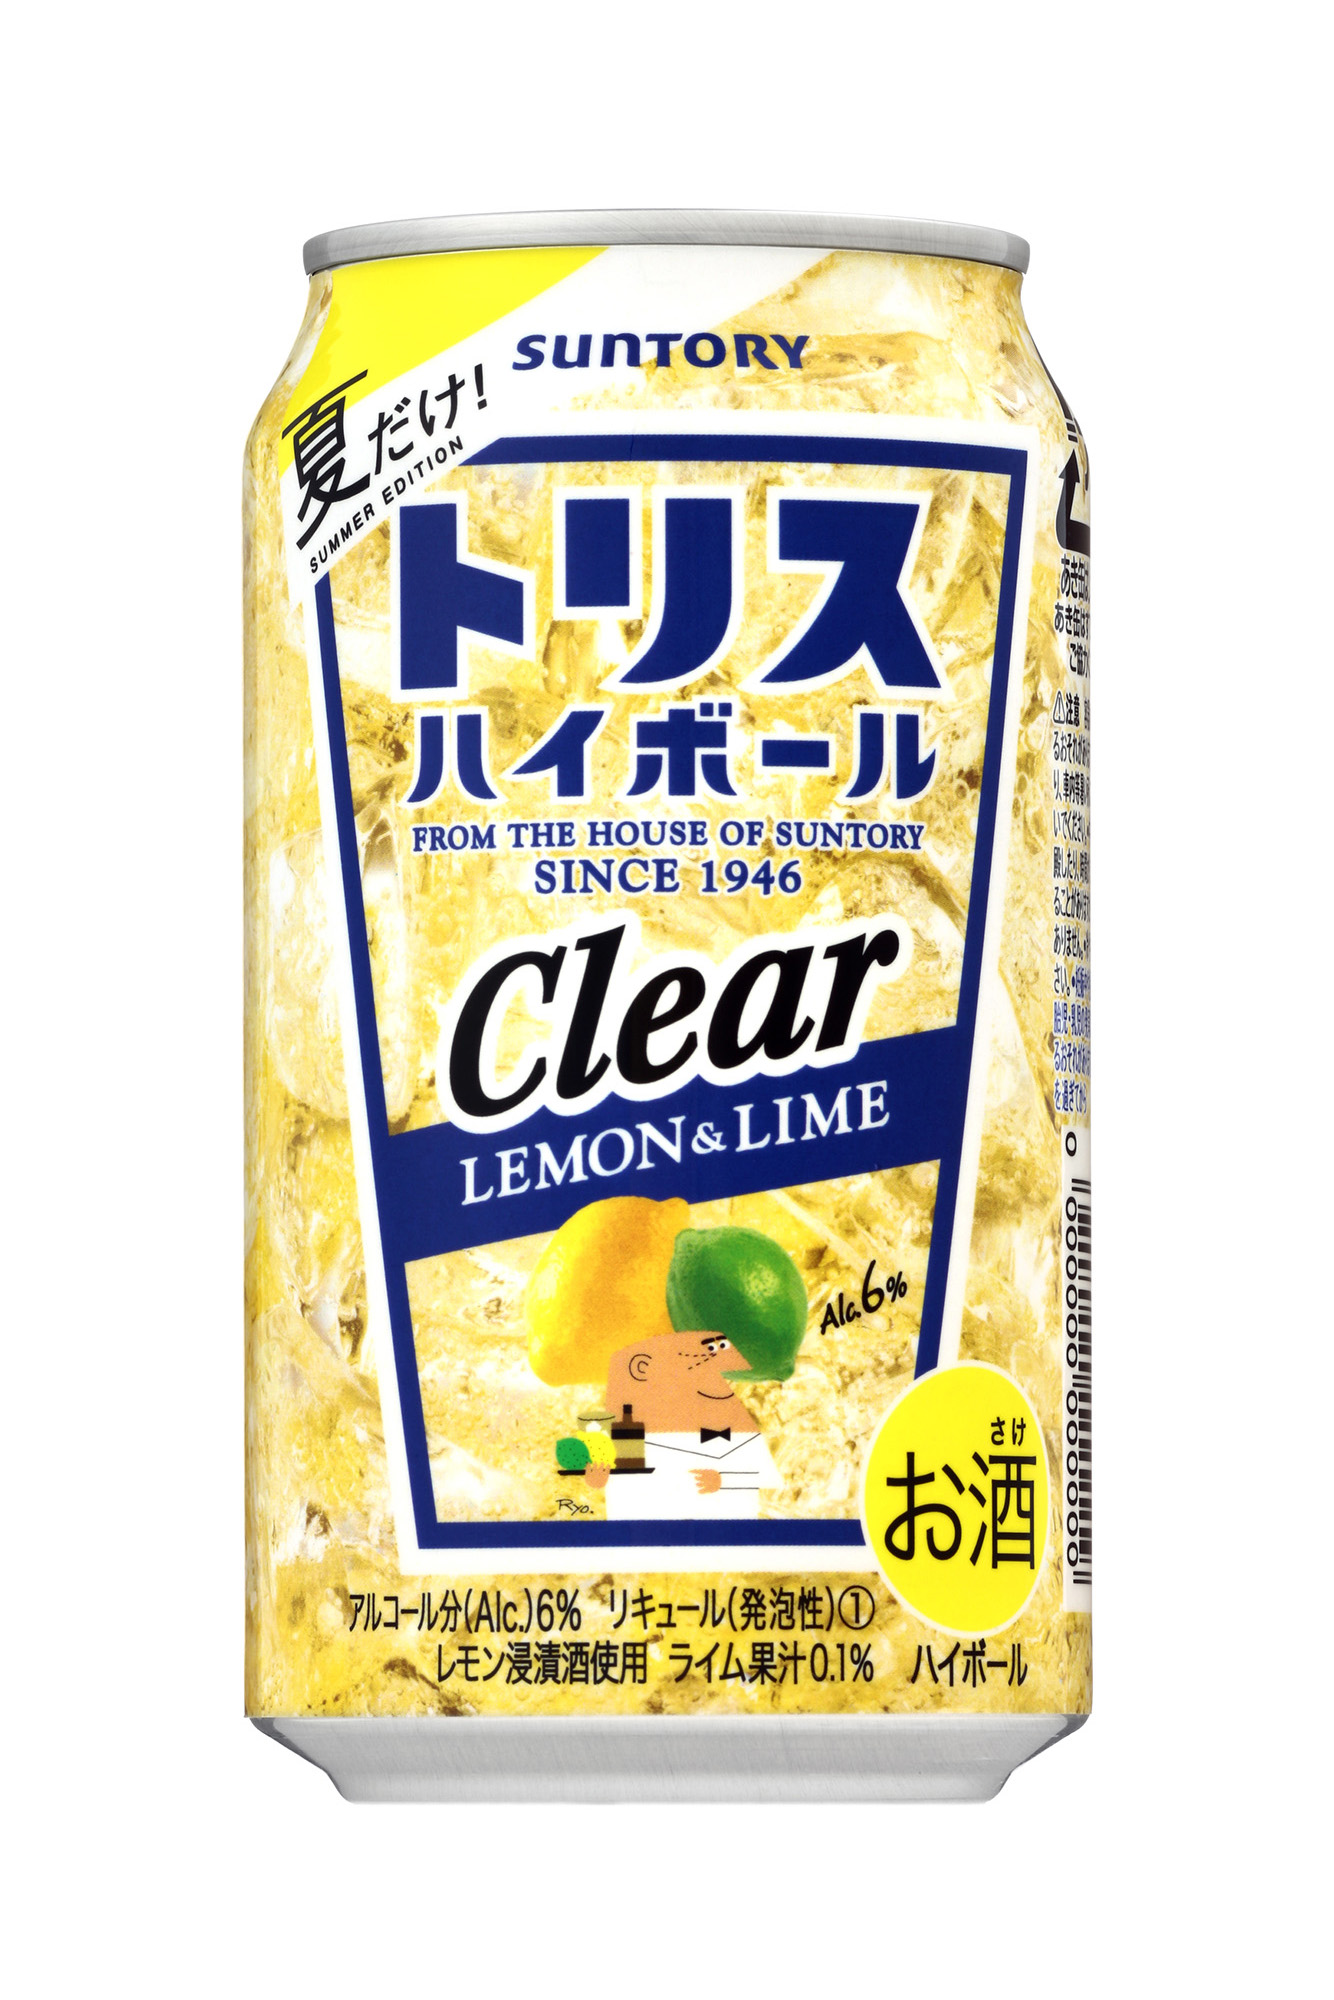 トリスハイボール缶 レモン ライム 夏季限定新発売 18年4月17日 ニュースリリース サントリー